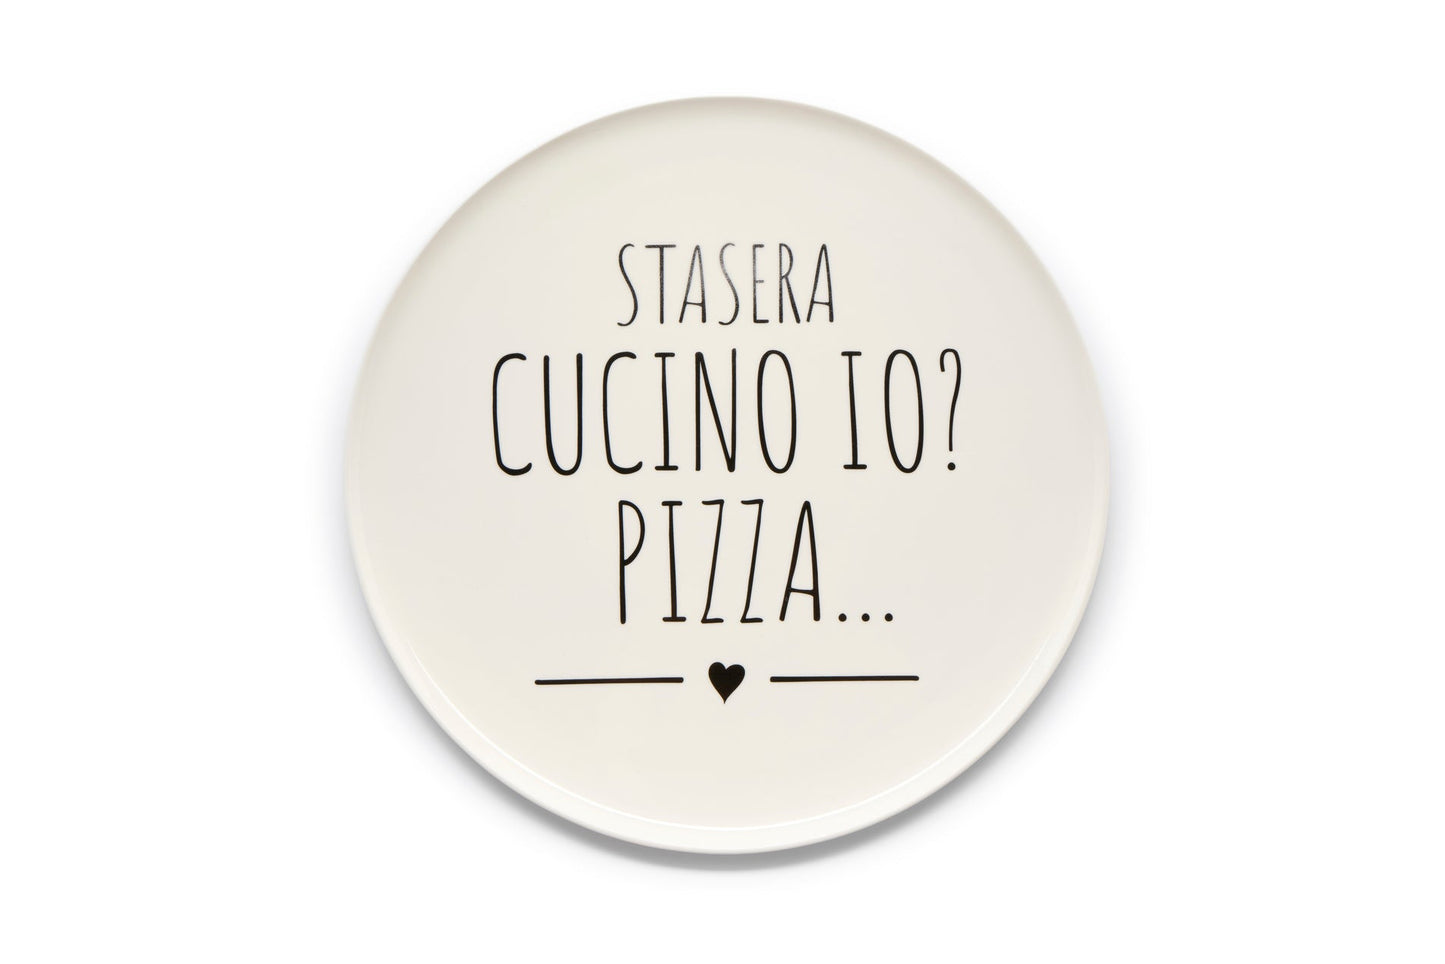 IMPERFETTO - PIATTO PIZZA "STASERA CUCINO IO? PIZZA... "